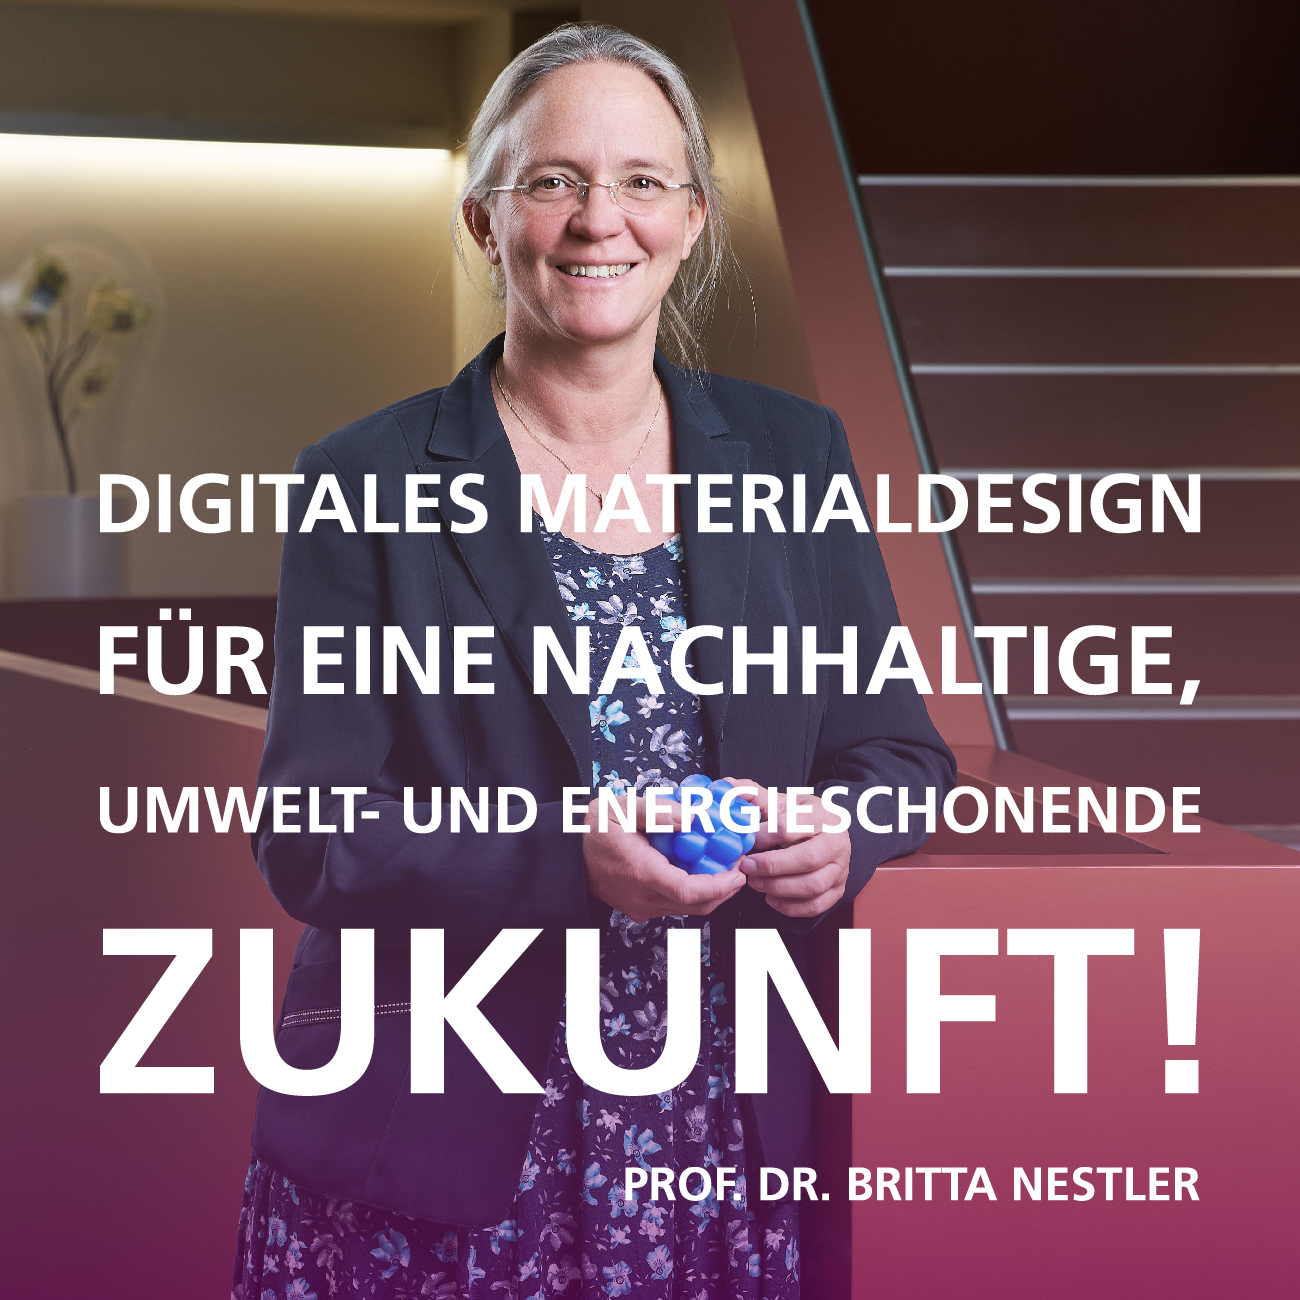 Digitales Materialdesign für eine nachhaltige, umwelt- und energieschonende Zukunft! Zitat von Prof. Dr. Britta Nestler, Bereich 3, KIT | Copyright: KIT | B3 | M. Hauser